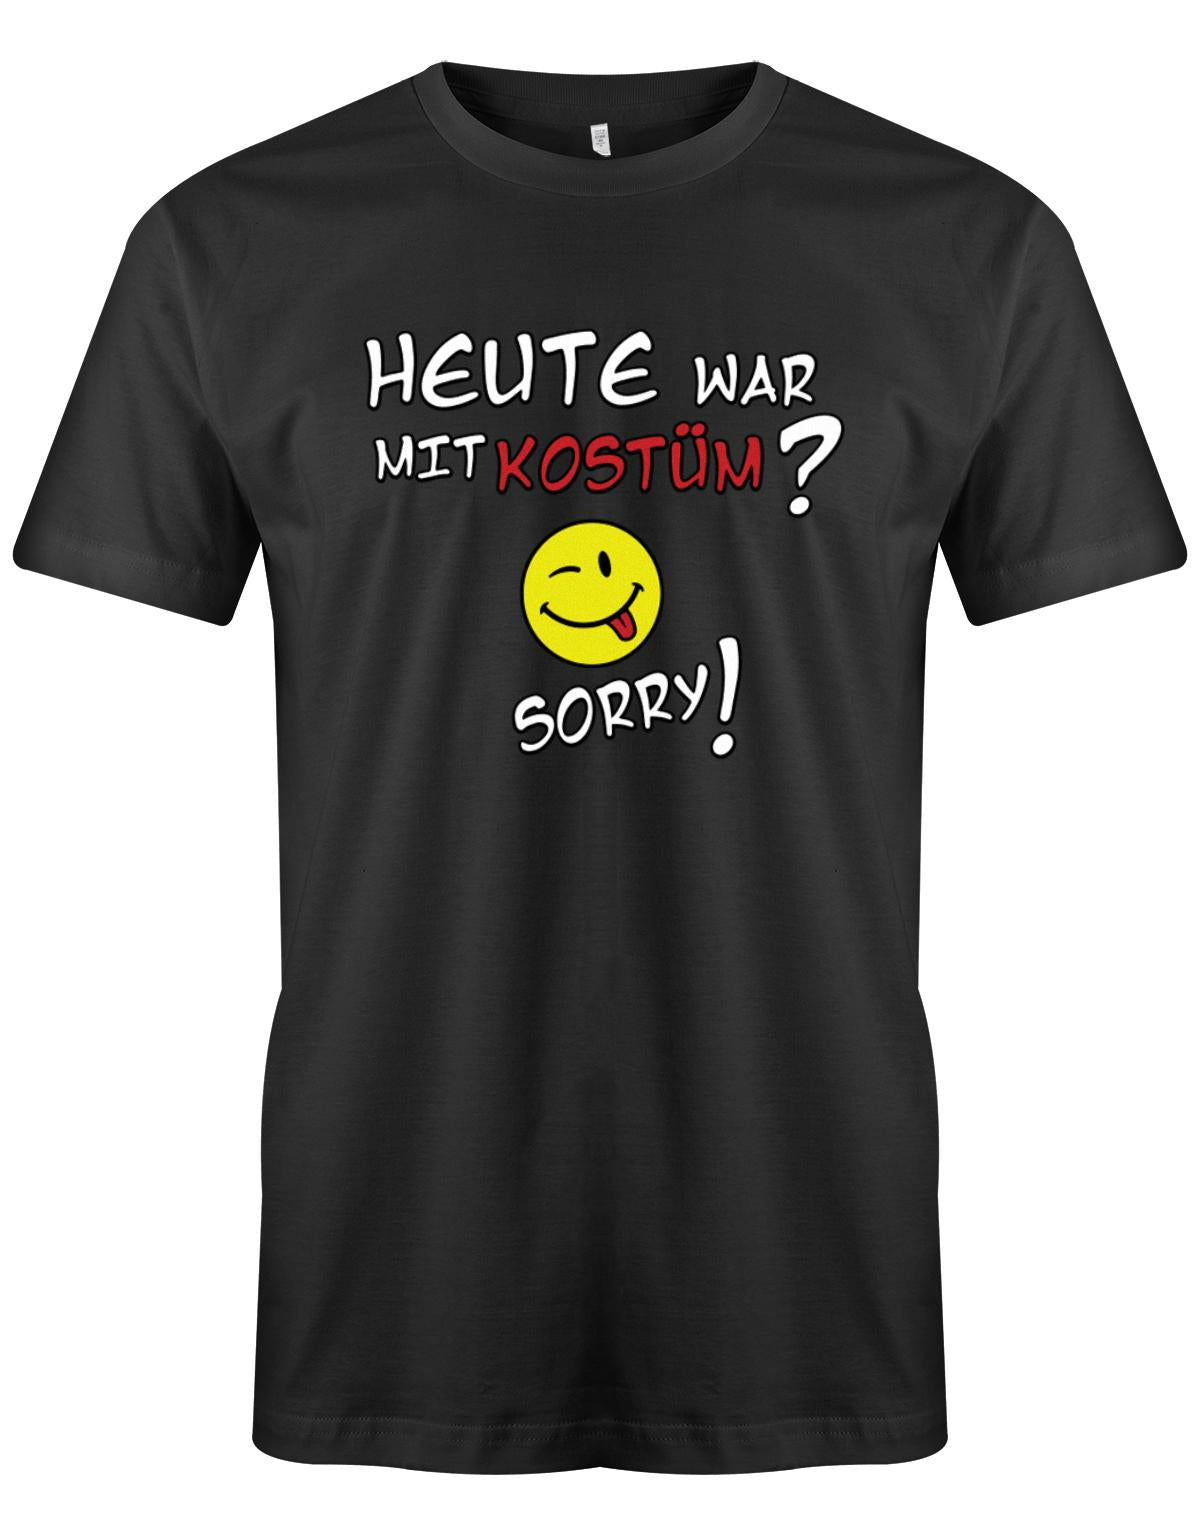 Heute-war-mit-kost-m-Sorry-Herren-Shirt-SChwarz